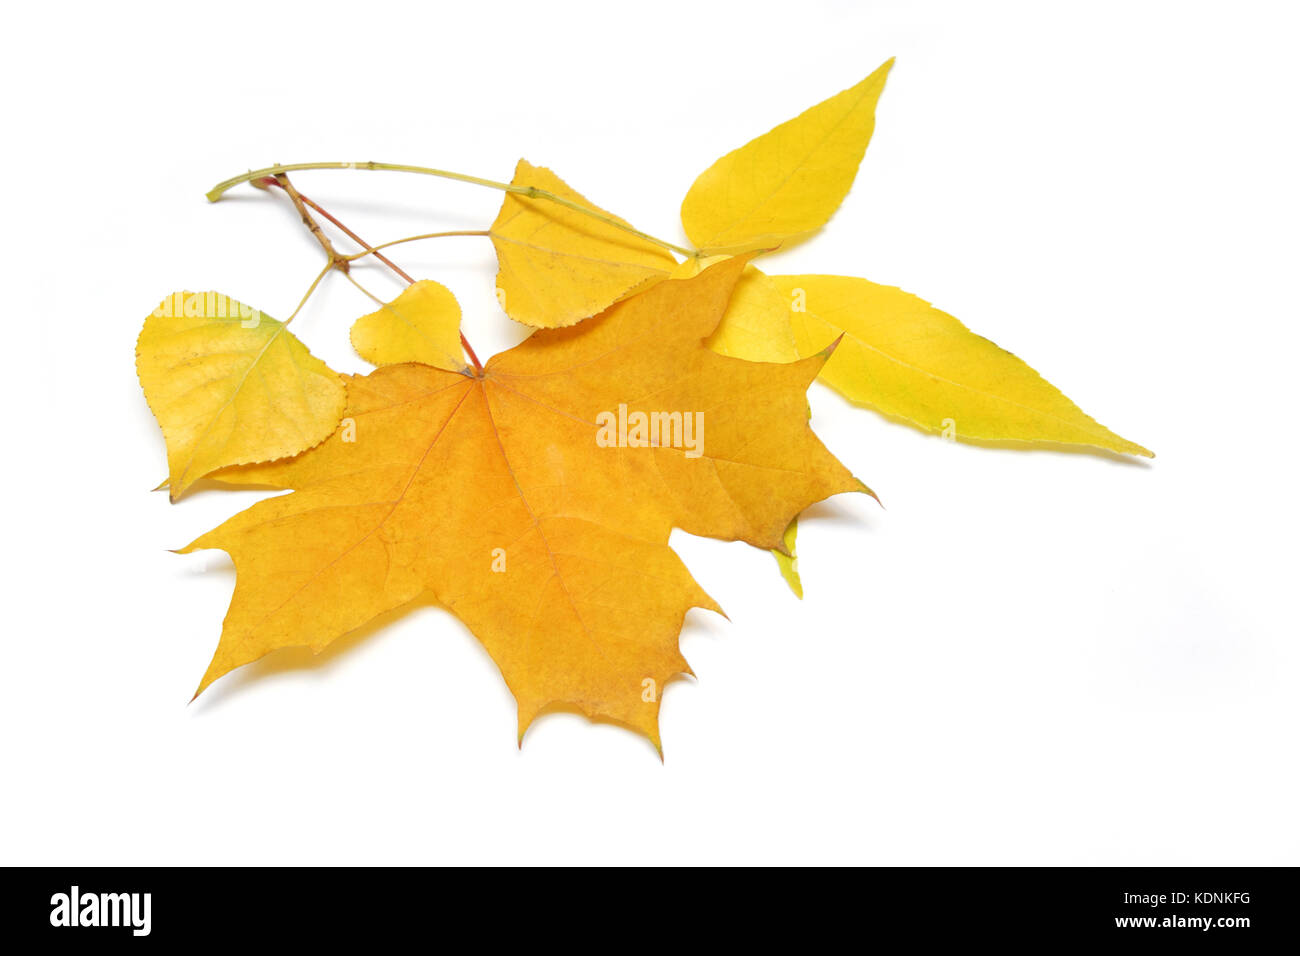 Fallen, Birke, Ahorn und Esche Blätter auf dem weißen Hintergrund. Stockfoto